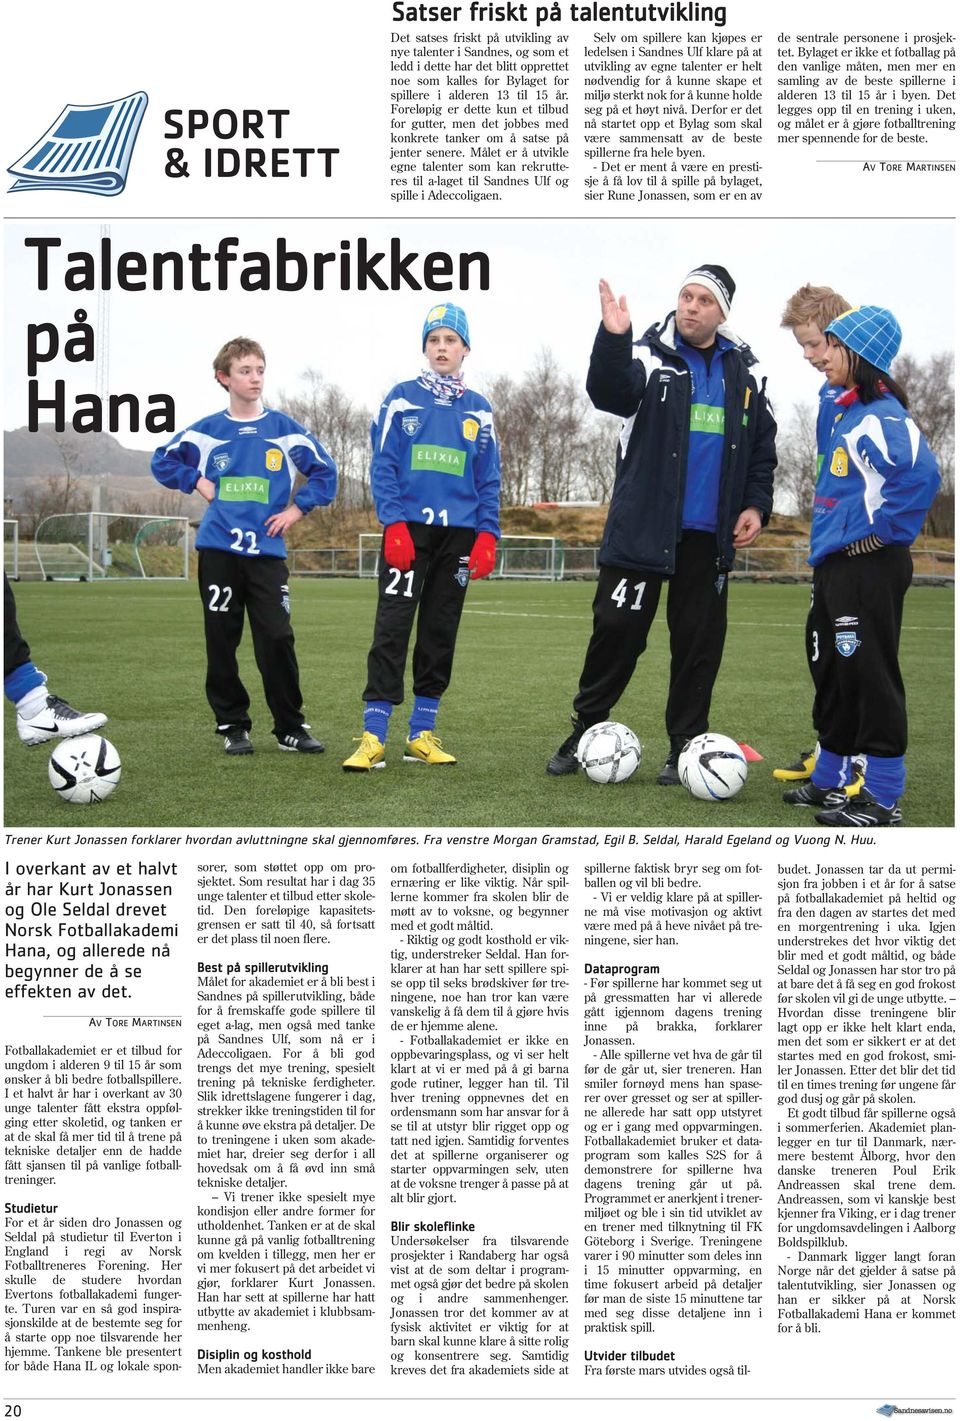 Målet er å utvikle egne talenter som kan rekrutteres til a-laget til Sandnes Ulf og spille i Adeccoligaen.